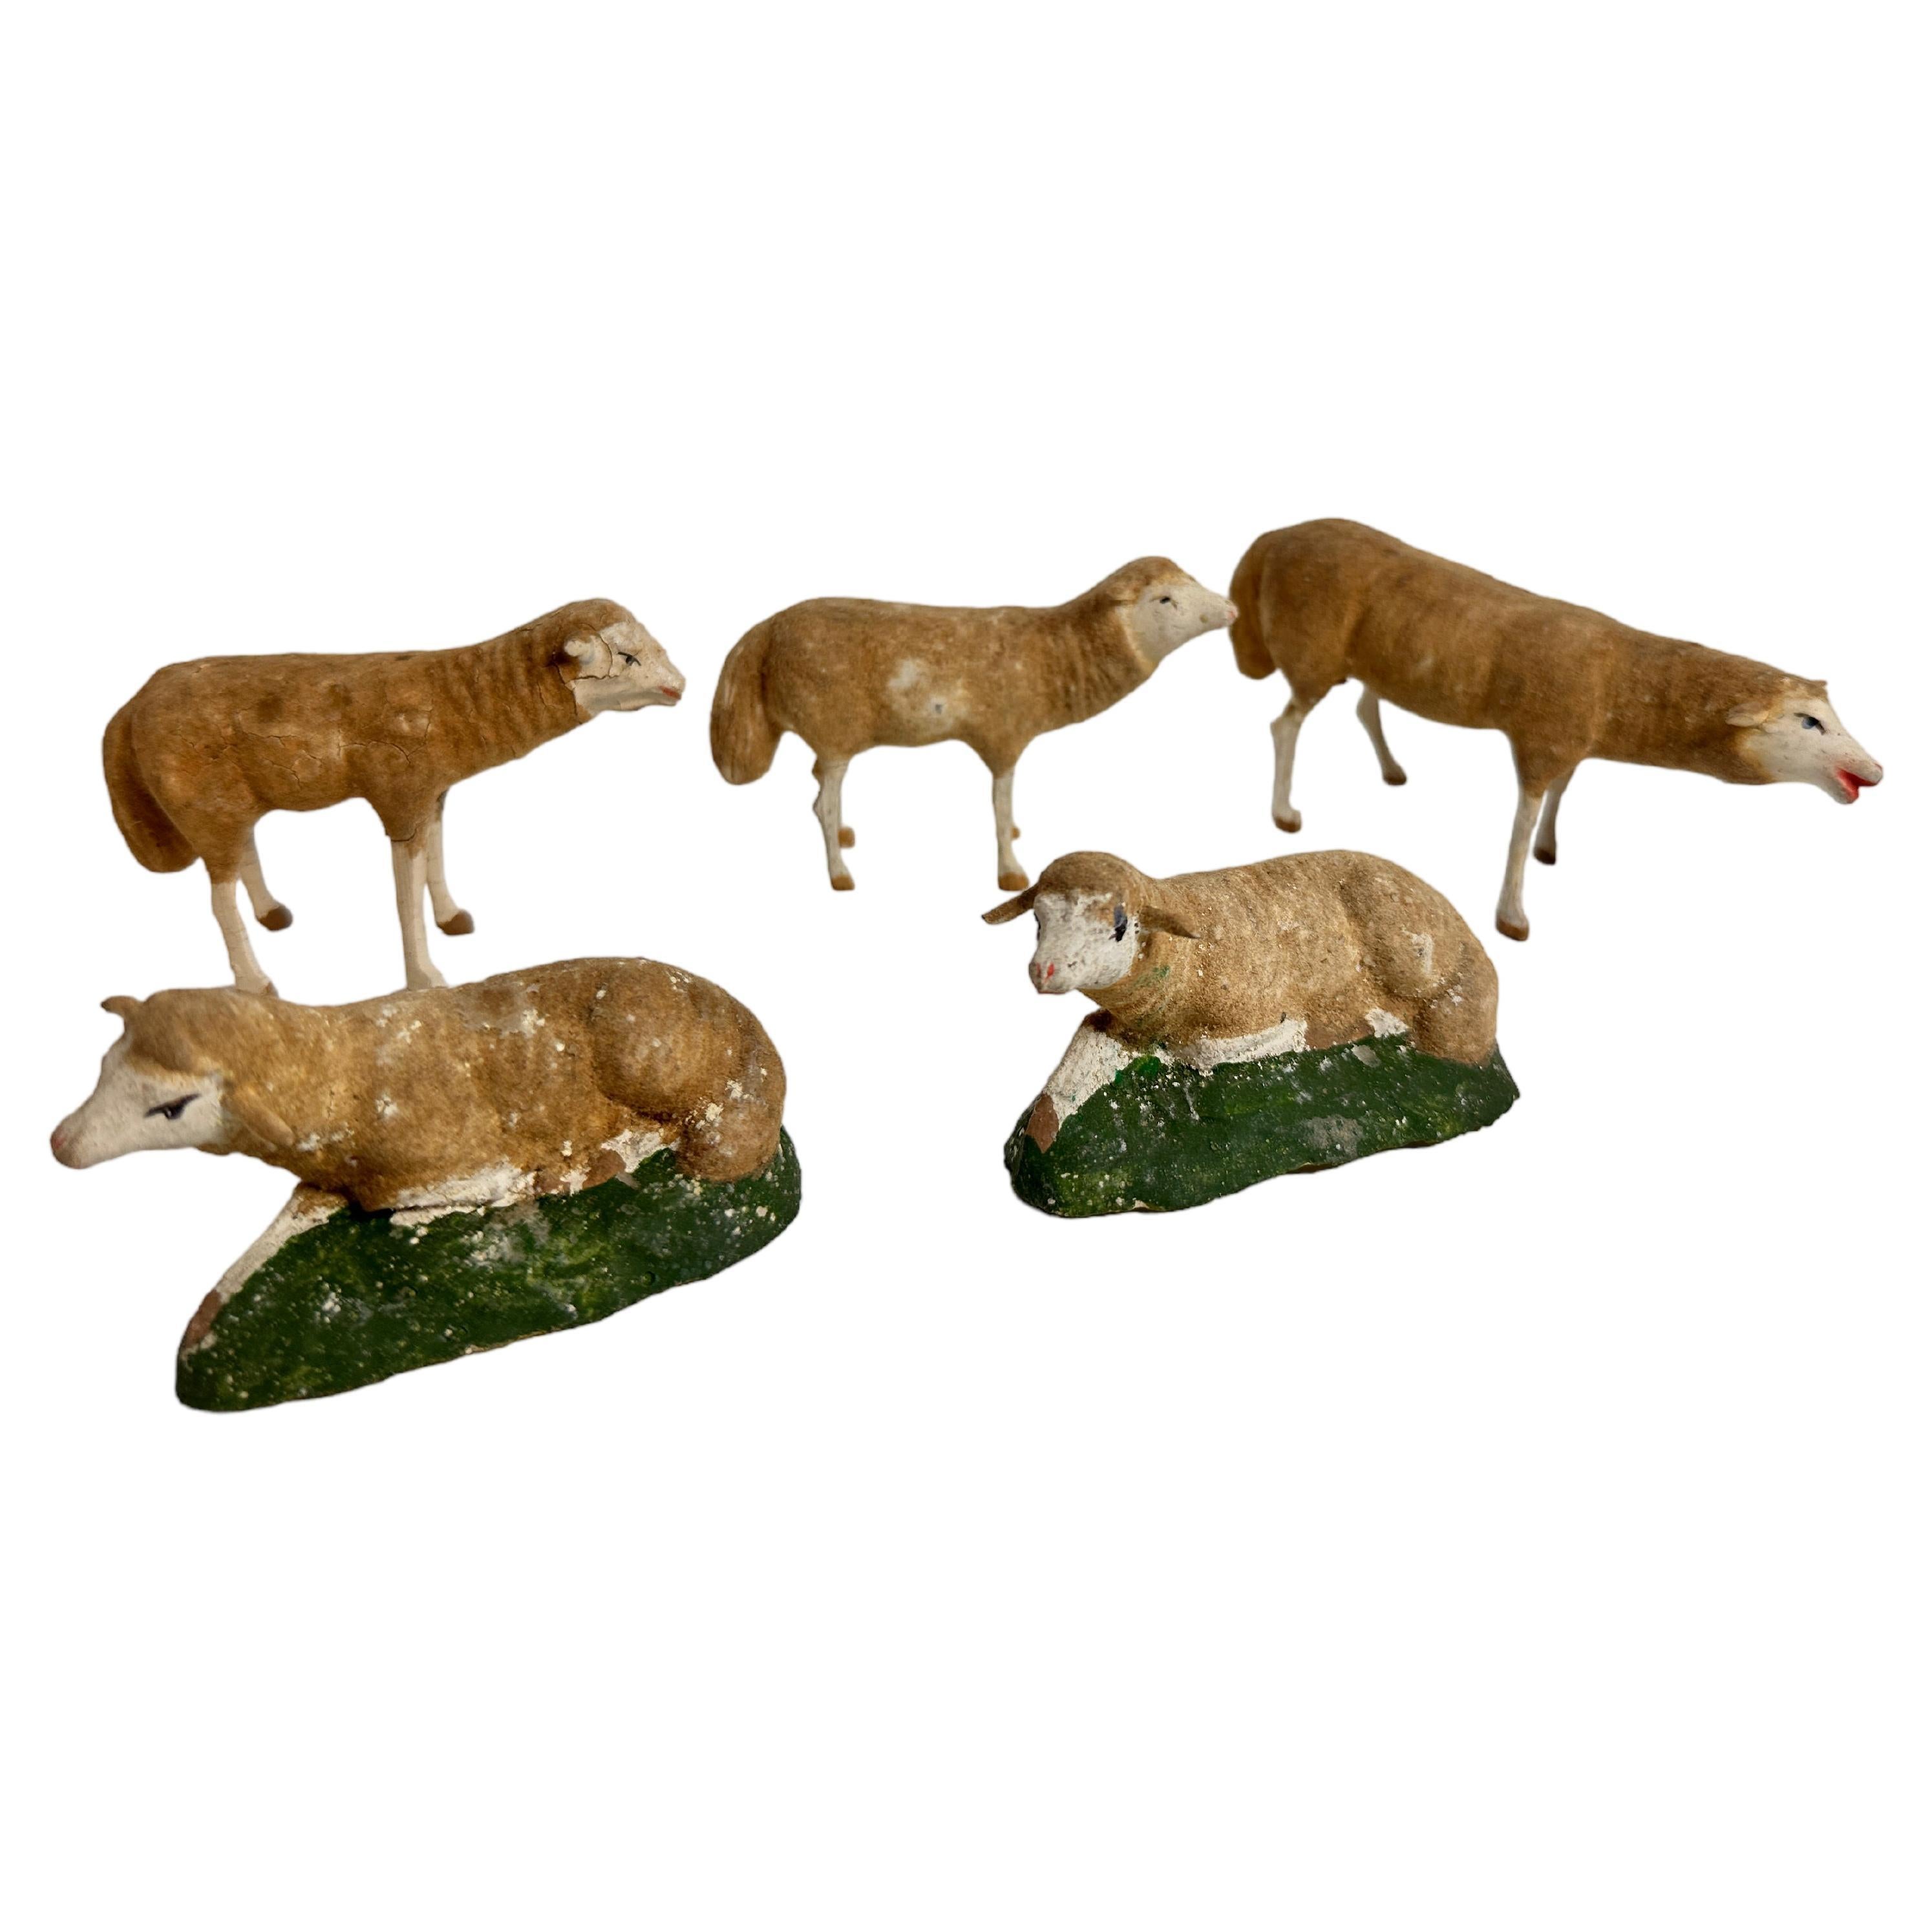 Ensemble allemand ancien de cinq moutons à pattes de Putz. Toutes ces figurines sont d'authentiques crèches de Noël allemandes anciennes. Comme ils sont tous anciens, la plupart d'entre eux présentent les signes attendus de l'âge et de